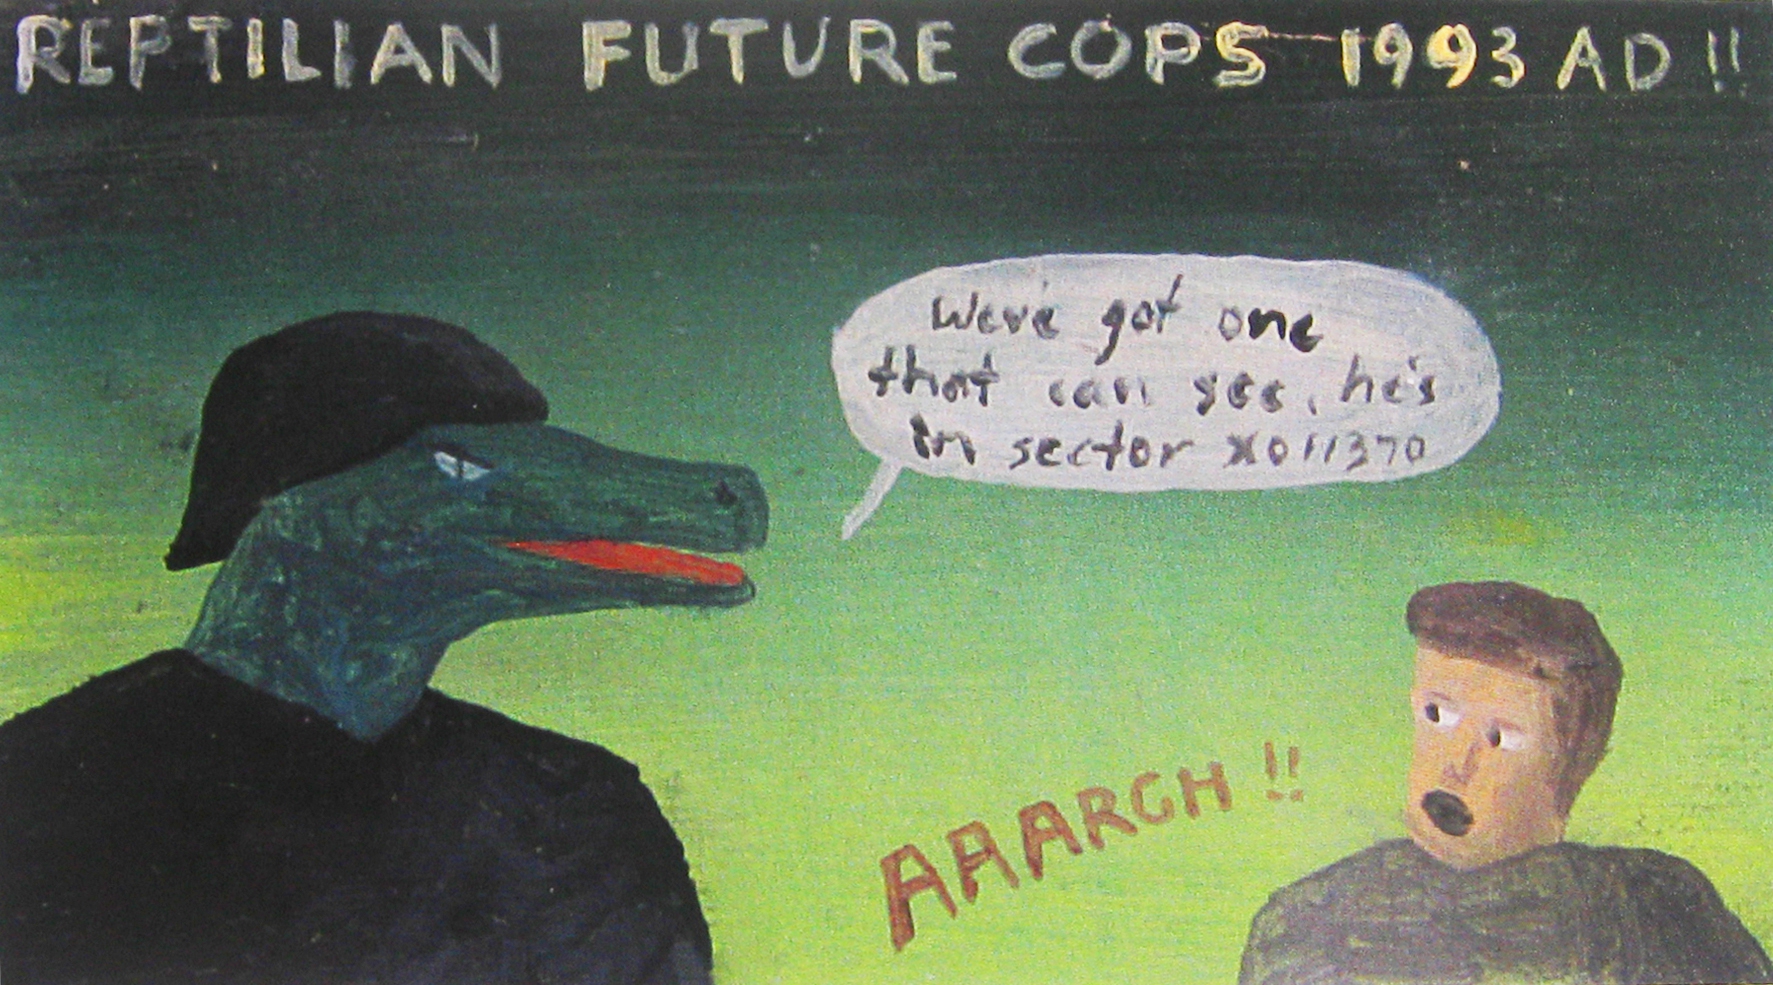 THE REPTILIAN FUTURE COPS 1993 AD